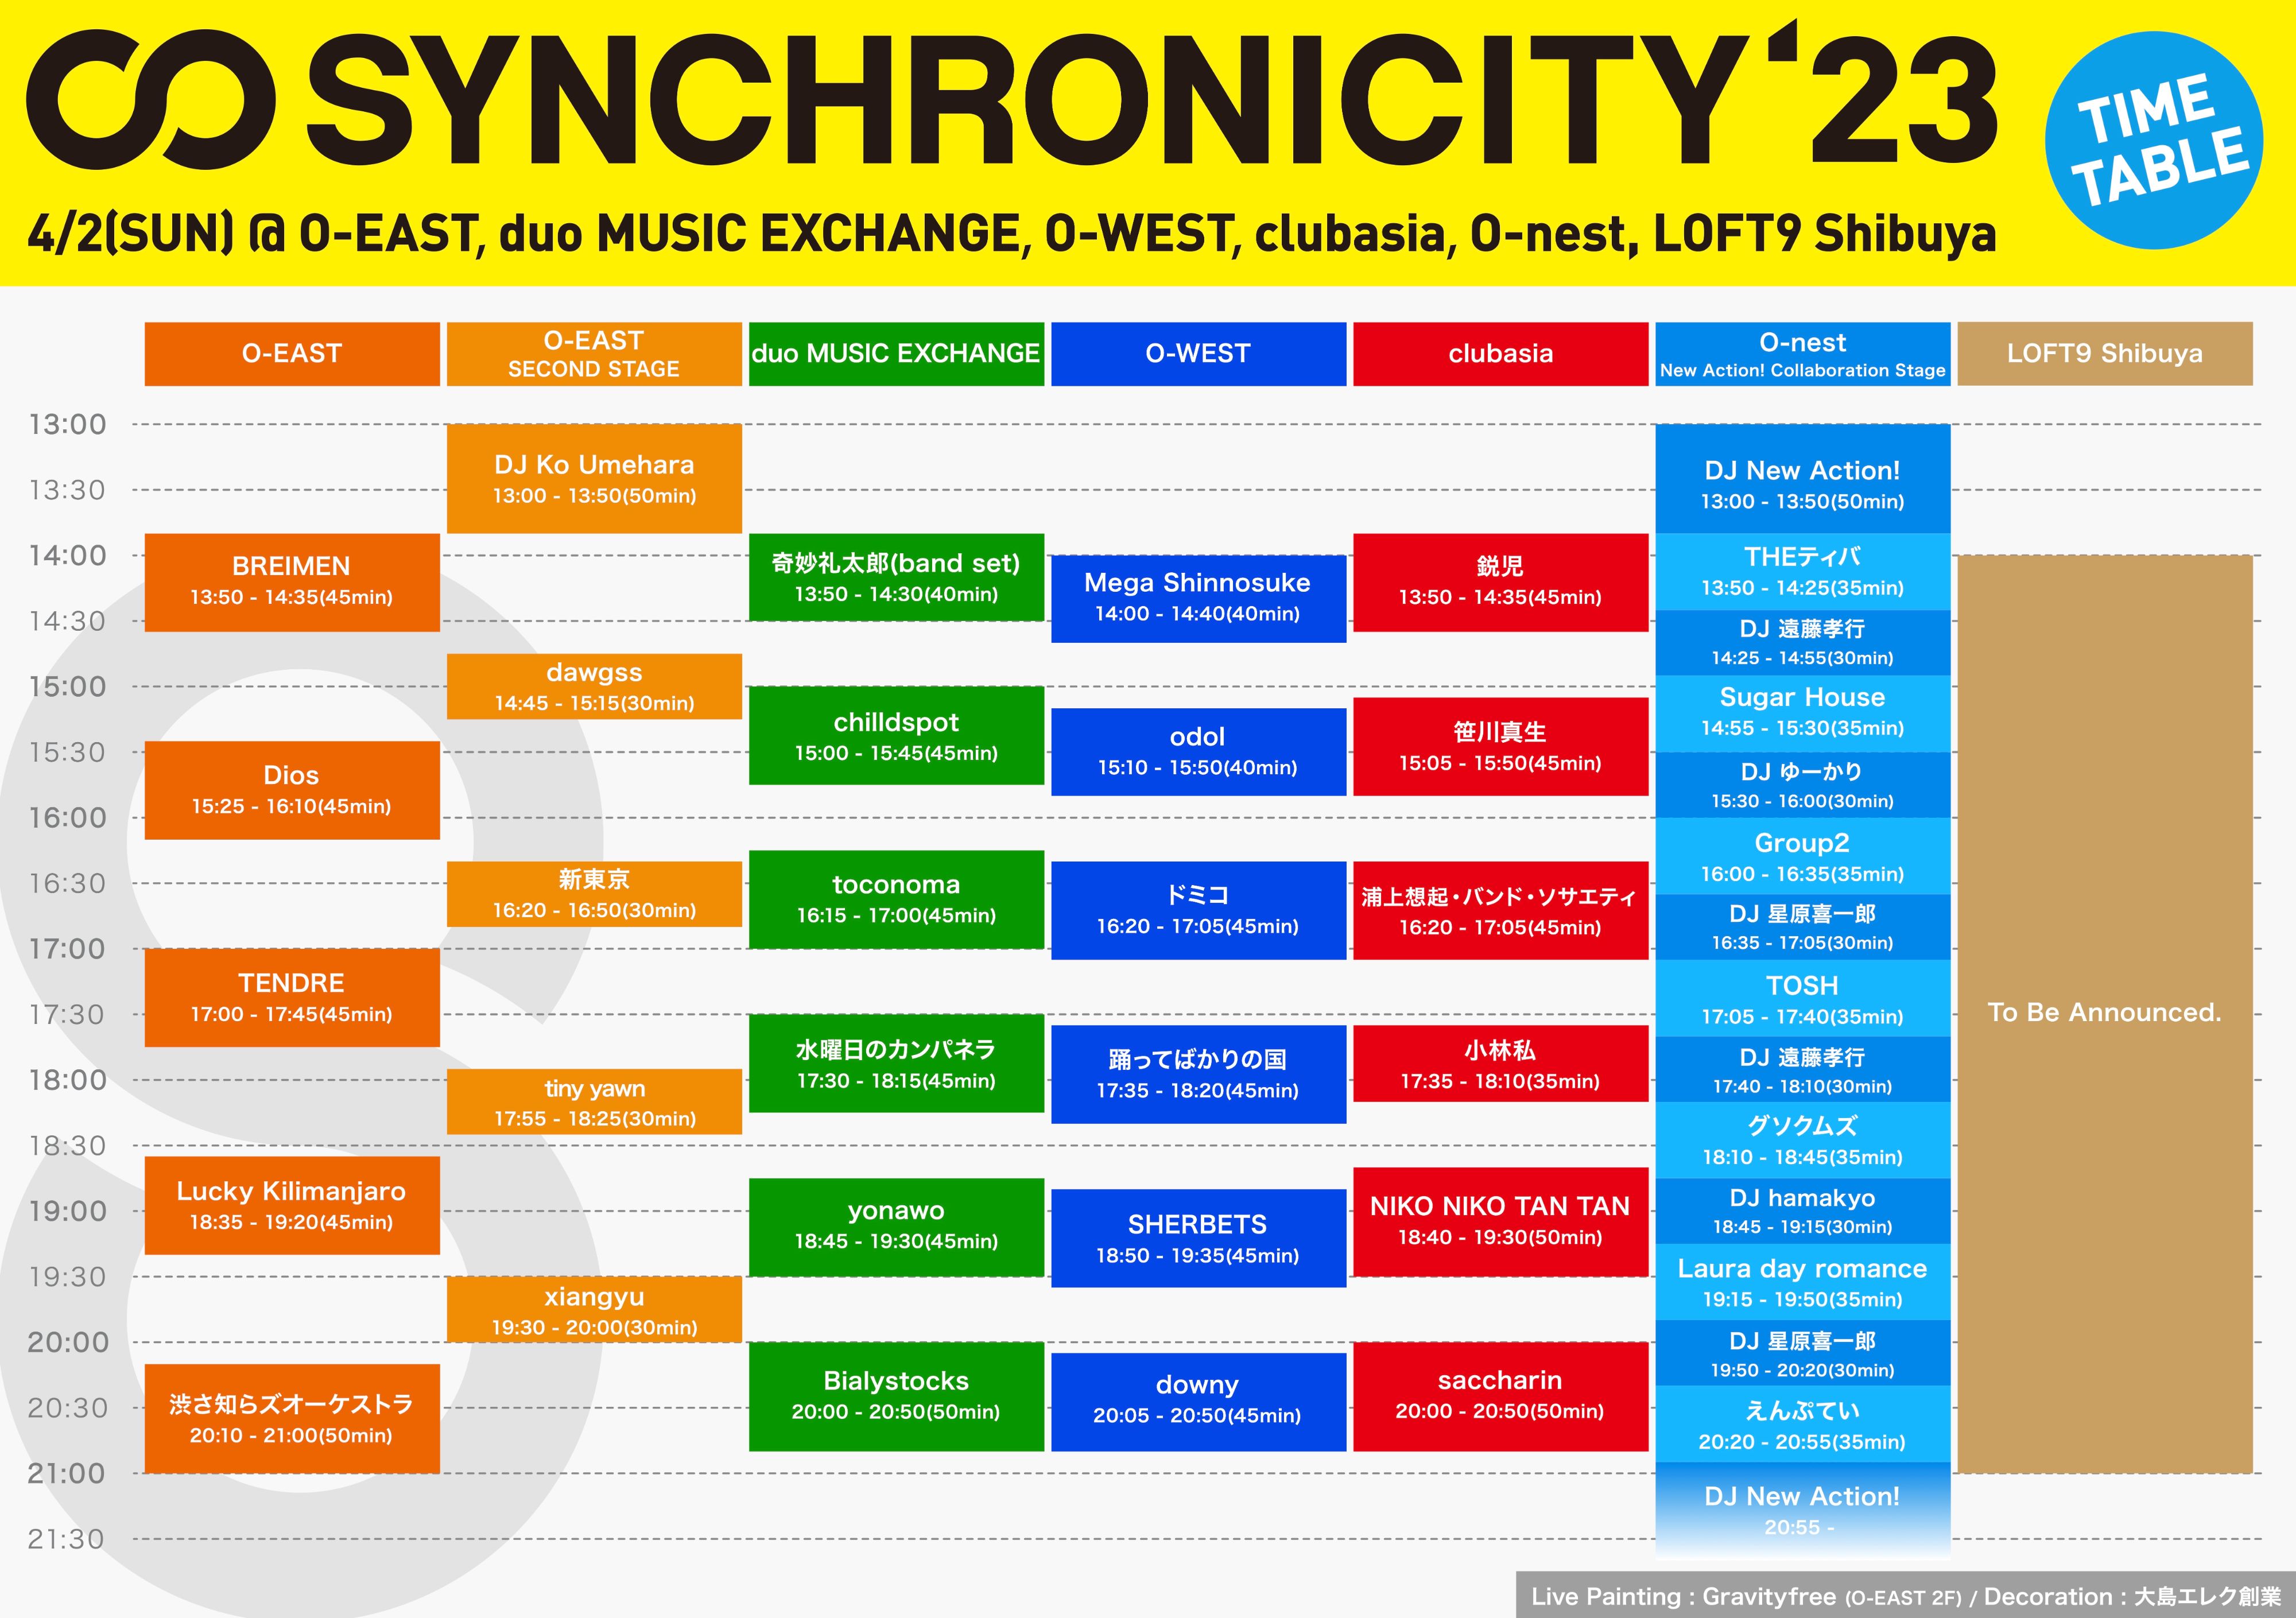 synchro23_timetable_230402_4000px